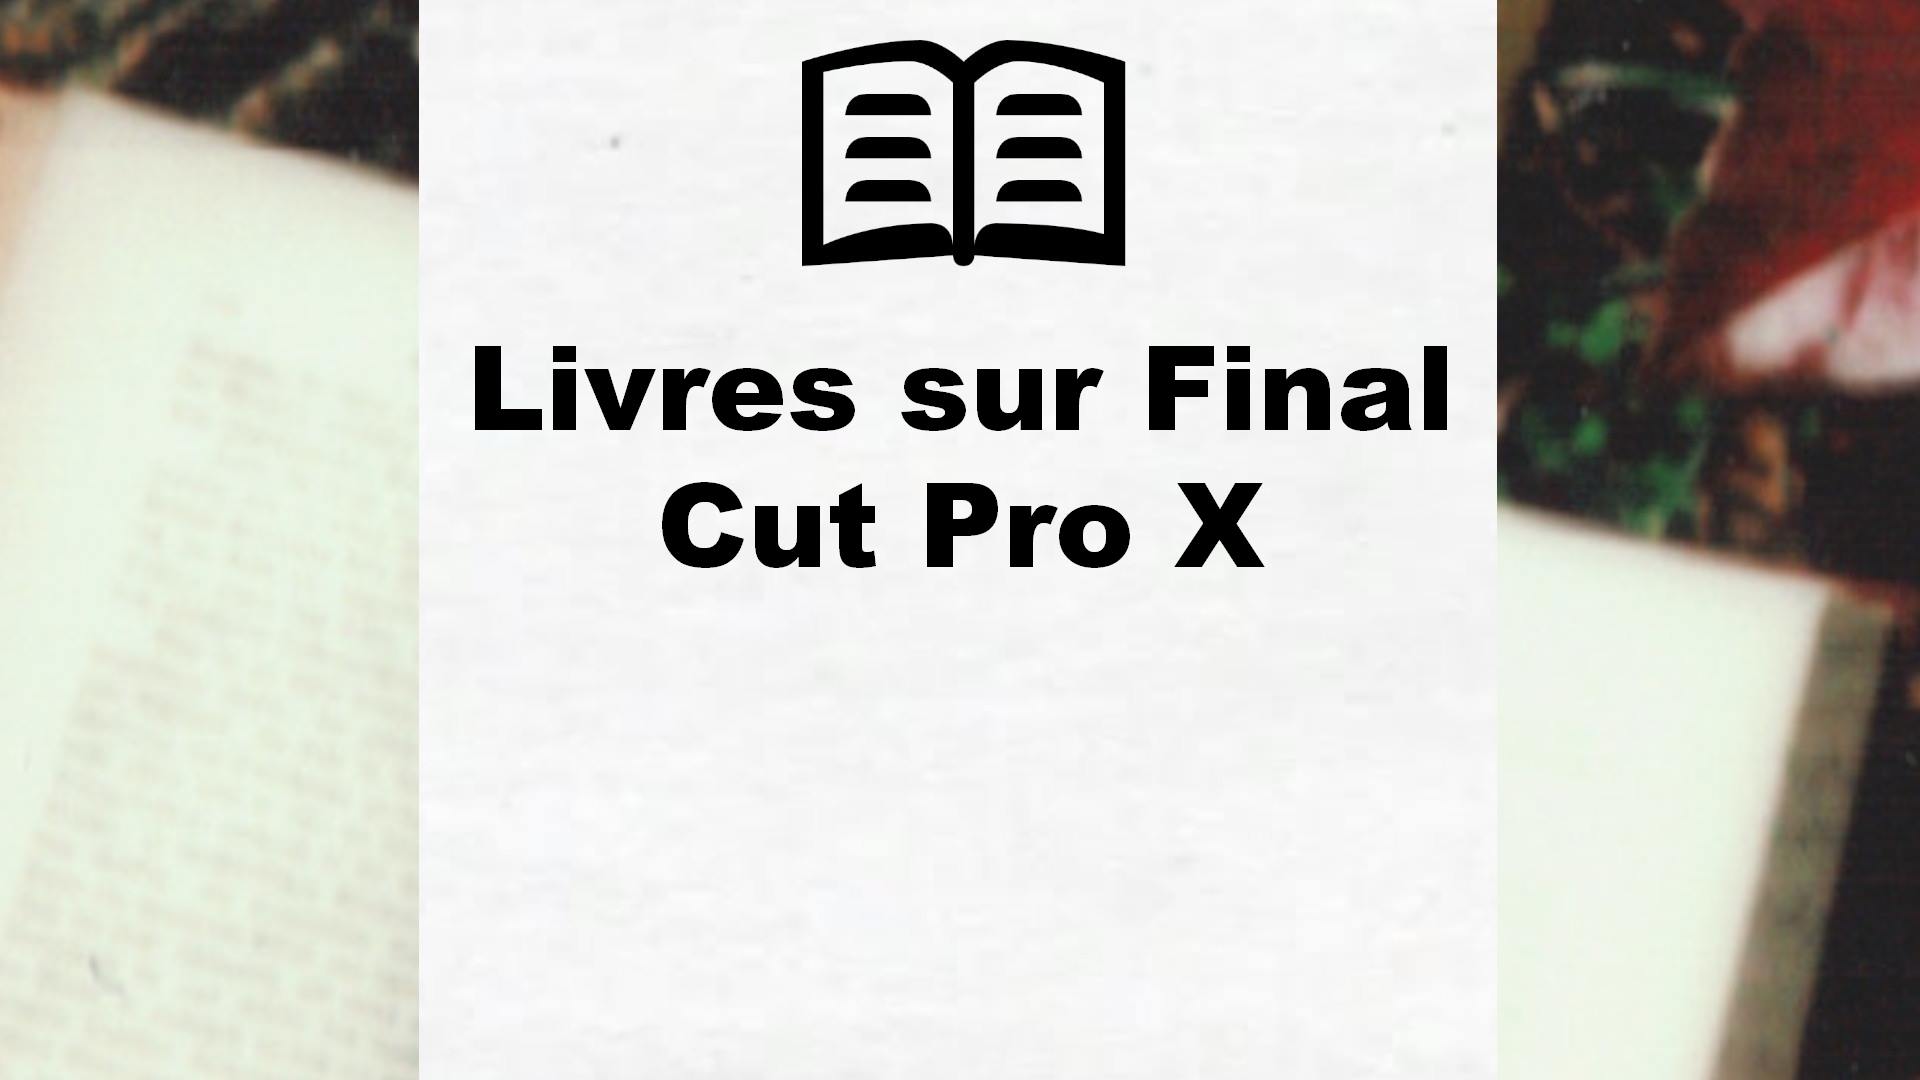 Livres sur Final Cut Pro X